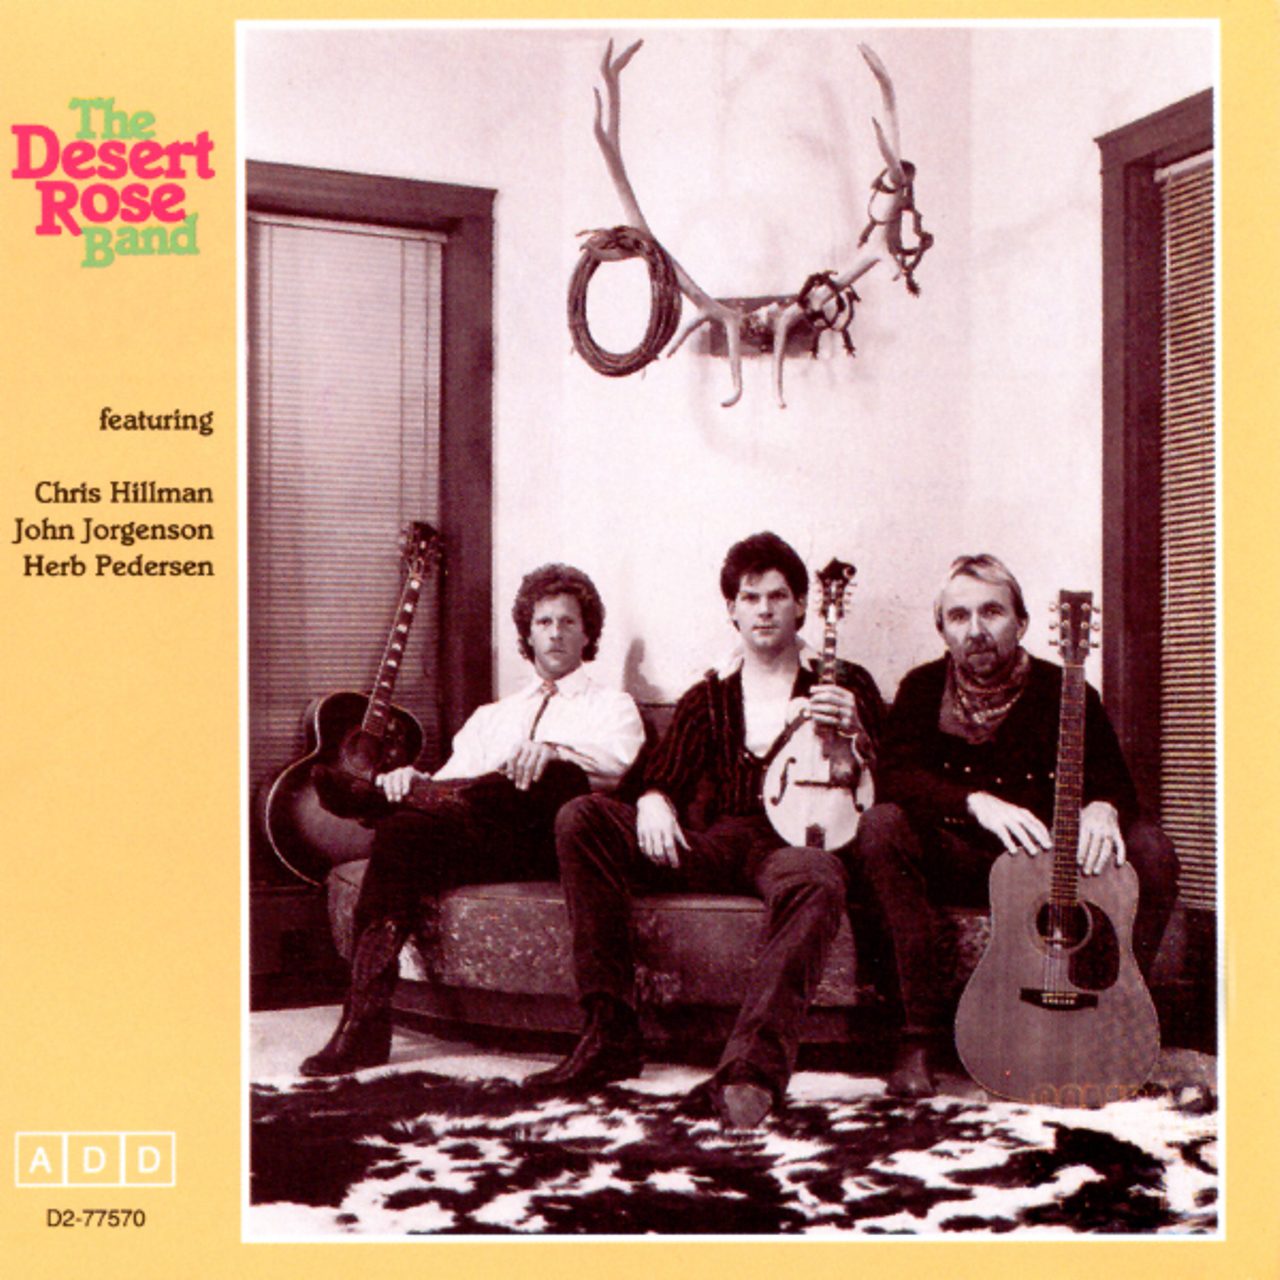 Desert Rose Band – The Desert Rose Band cover album